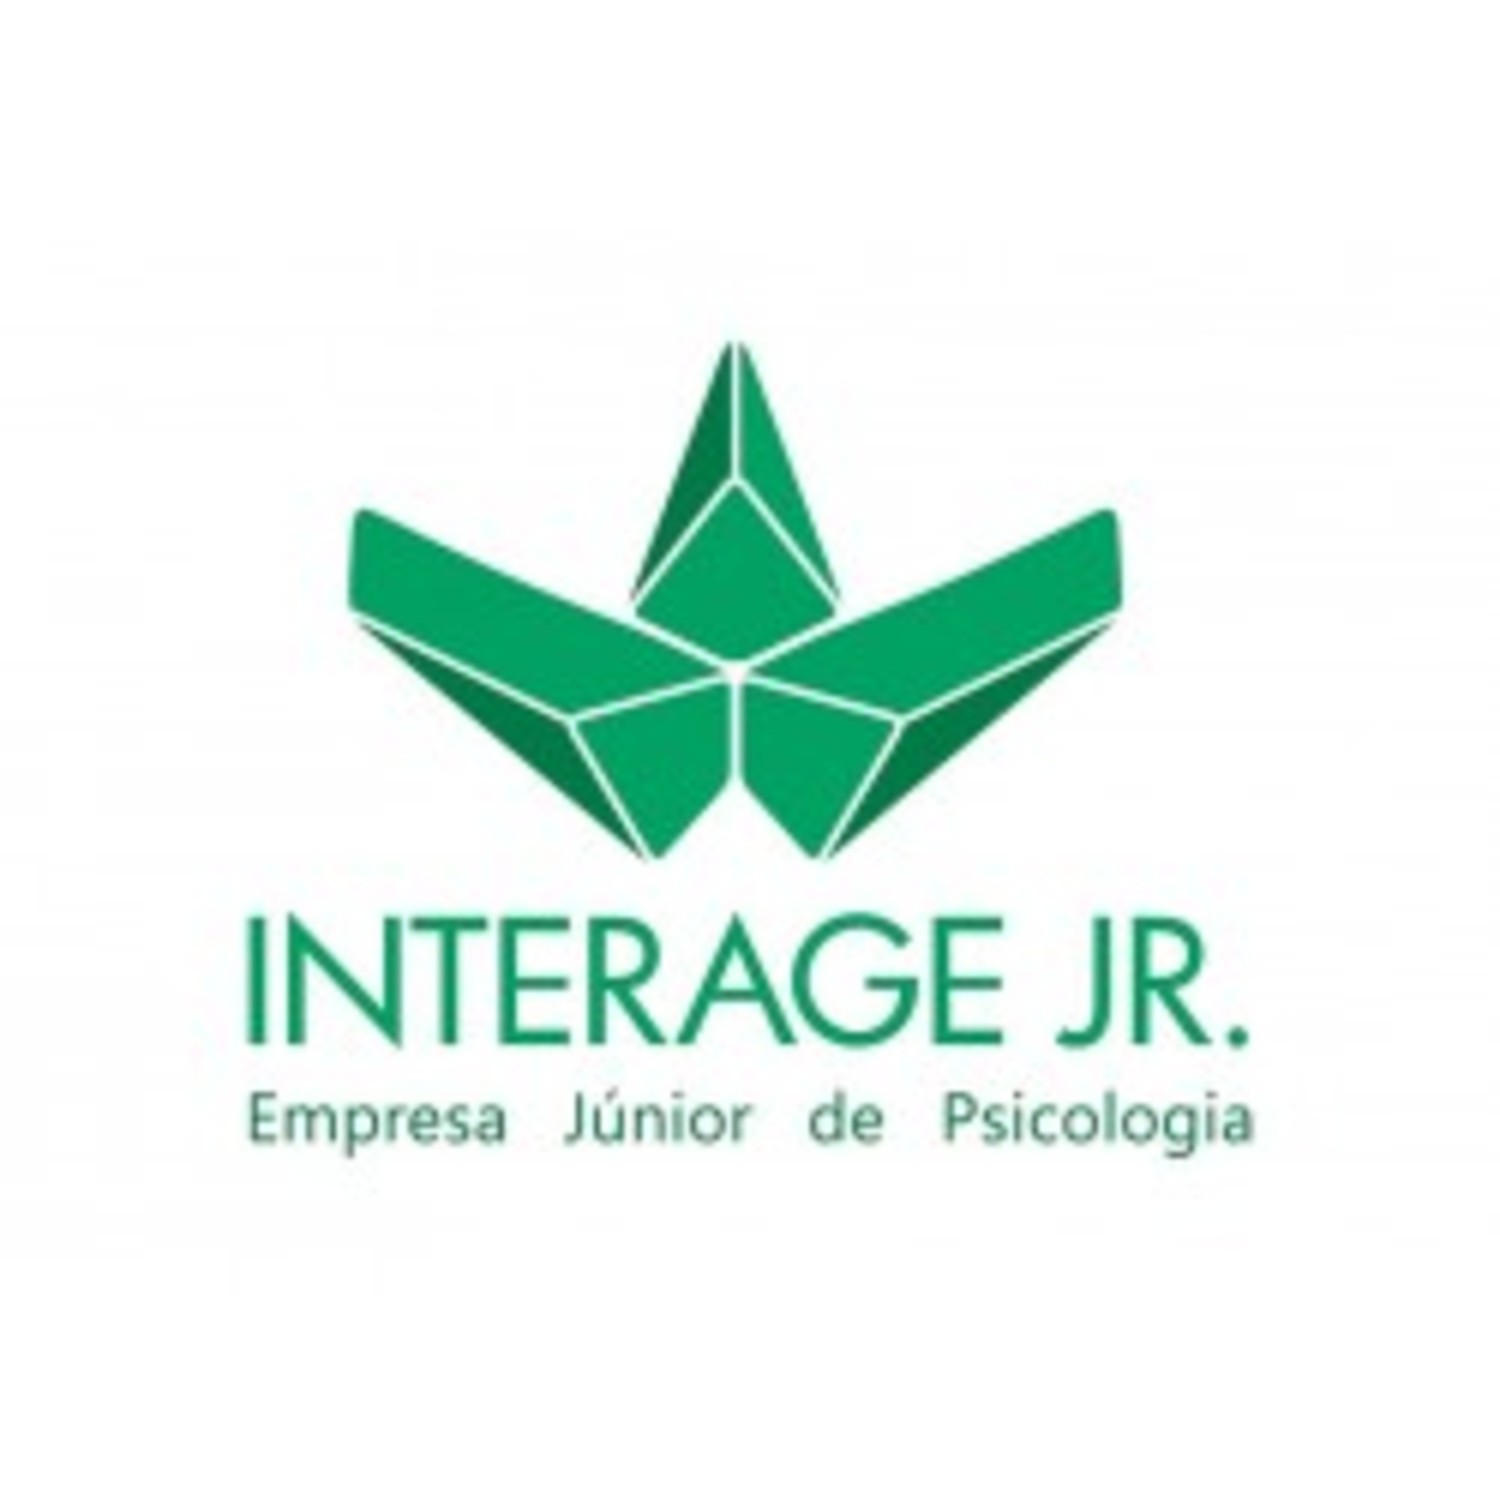 Interage Jr - Empresa Júnior de Psicologia